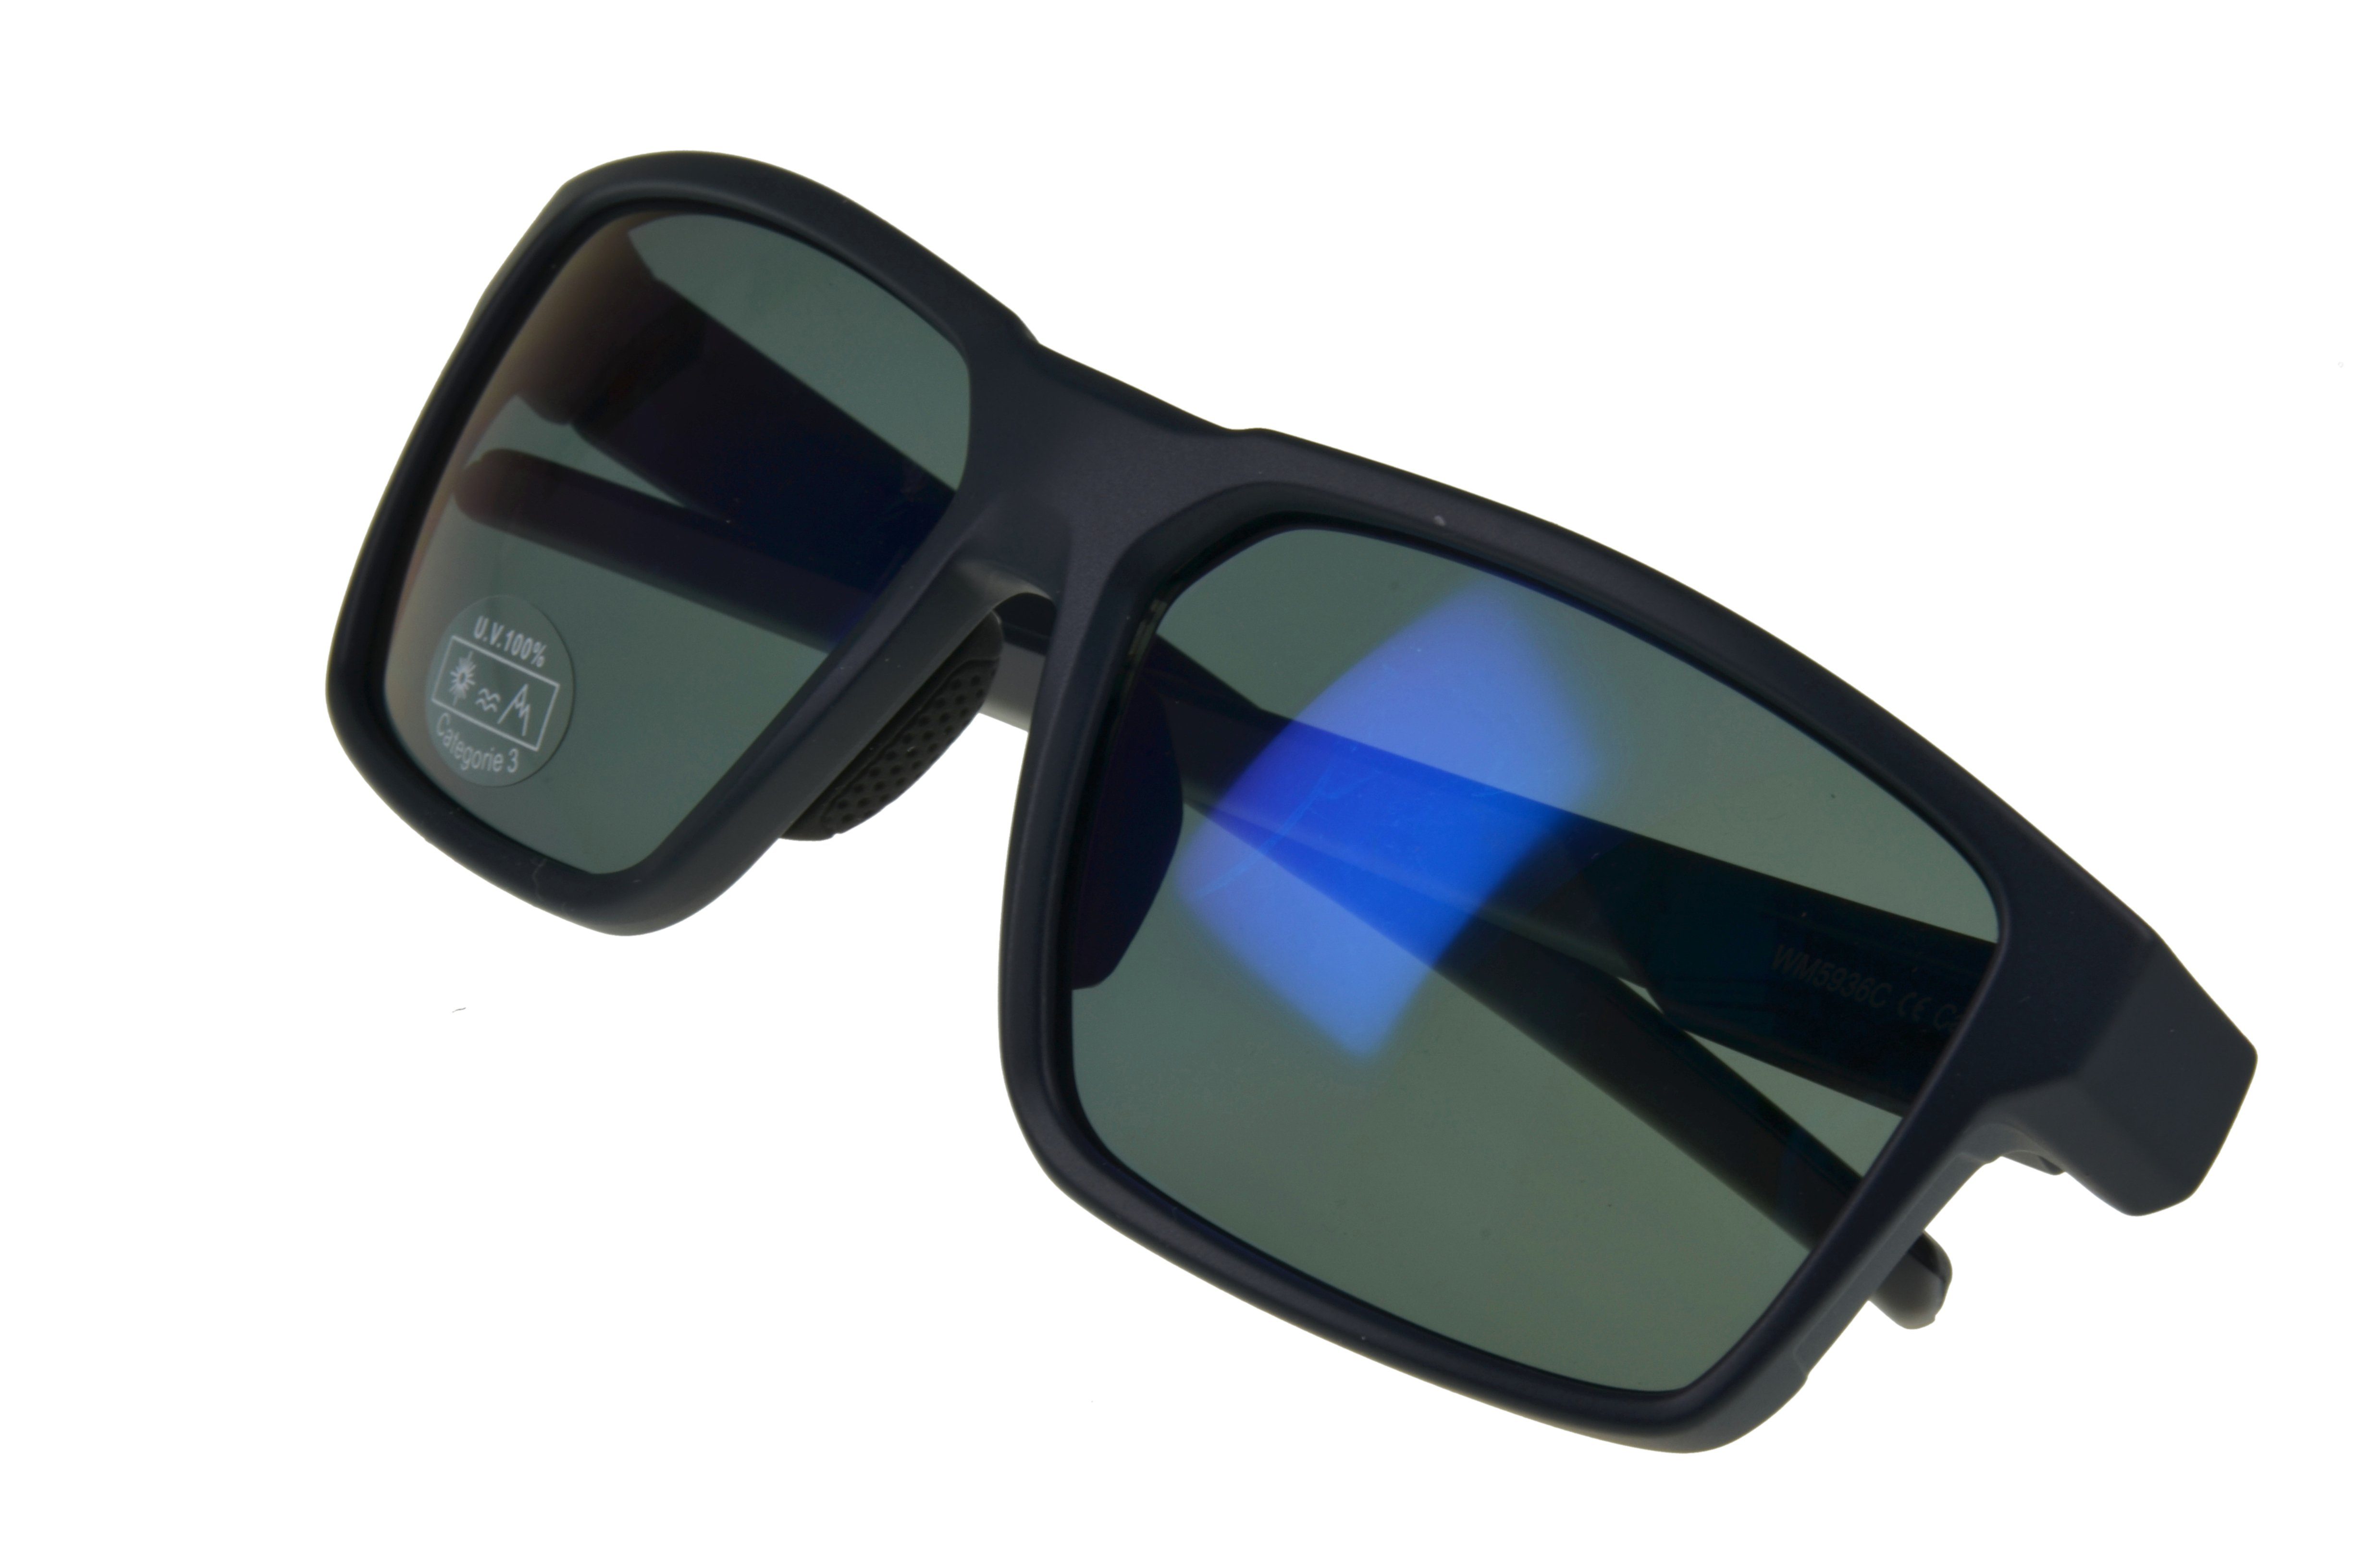 Sonnenbrille braun Fahrradbrille schwarz_blau Sportbrille Herren Damen grau, Unisex schwarz, getönte WS5936 Gamswild Gläser Skibrille